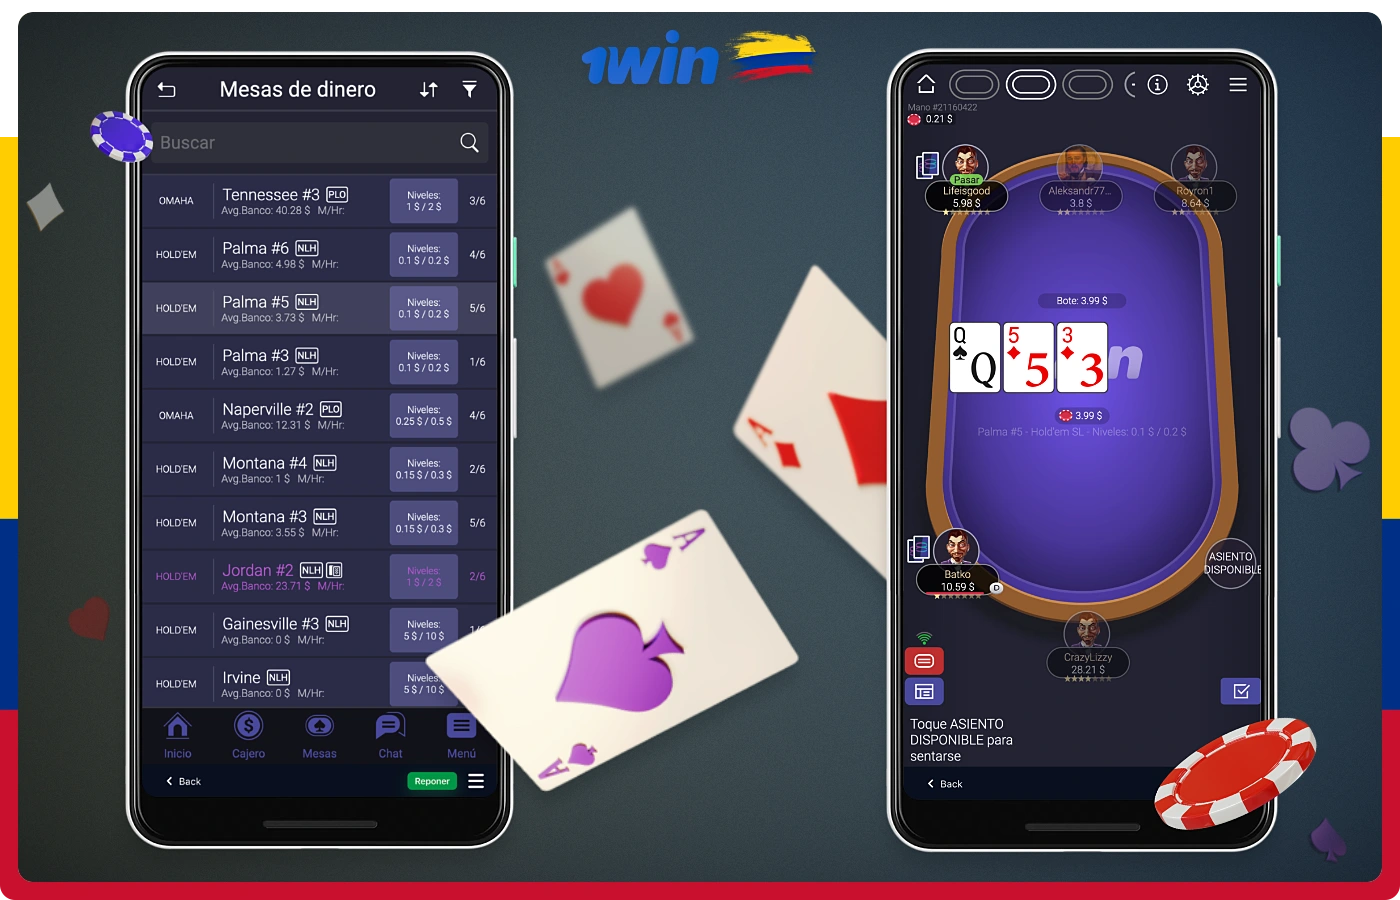 La aplicación móvil de 1win permite a los usuarios colombianos jugar al póquer